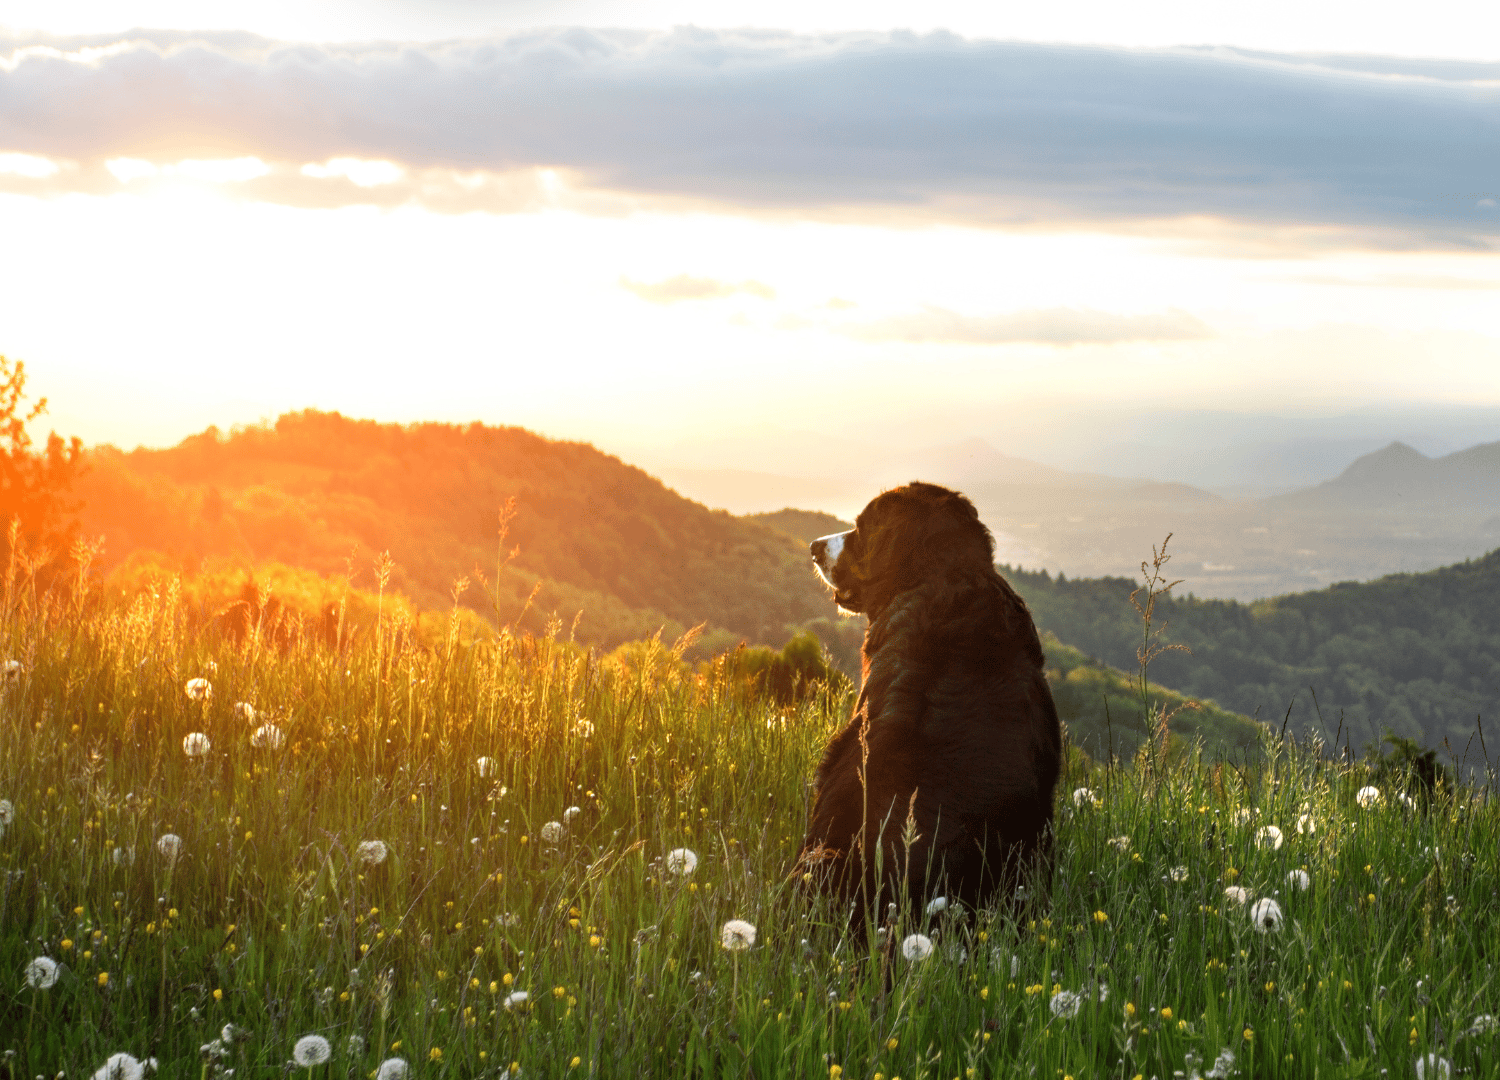 black and white dog breeds - Bernese Mountain Dog